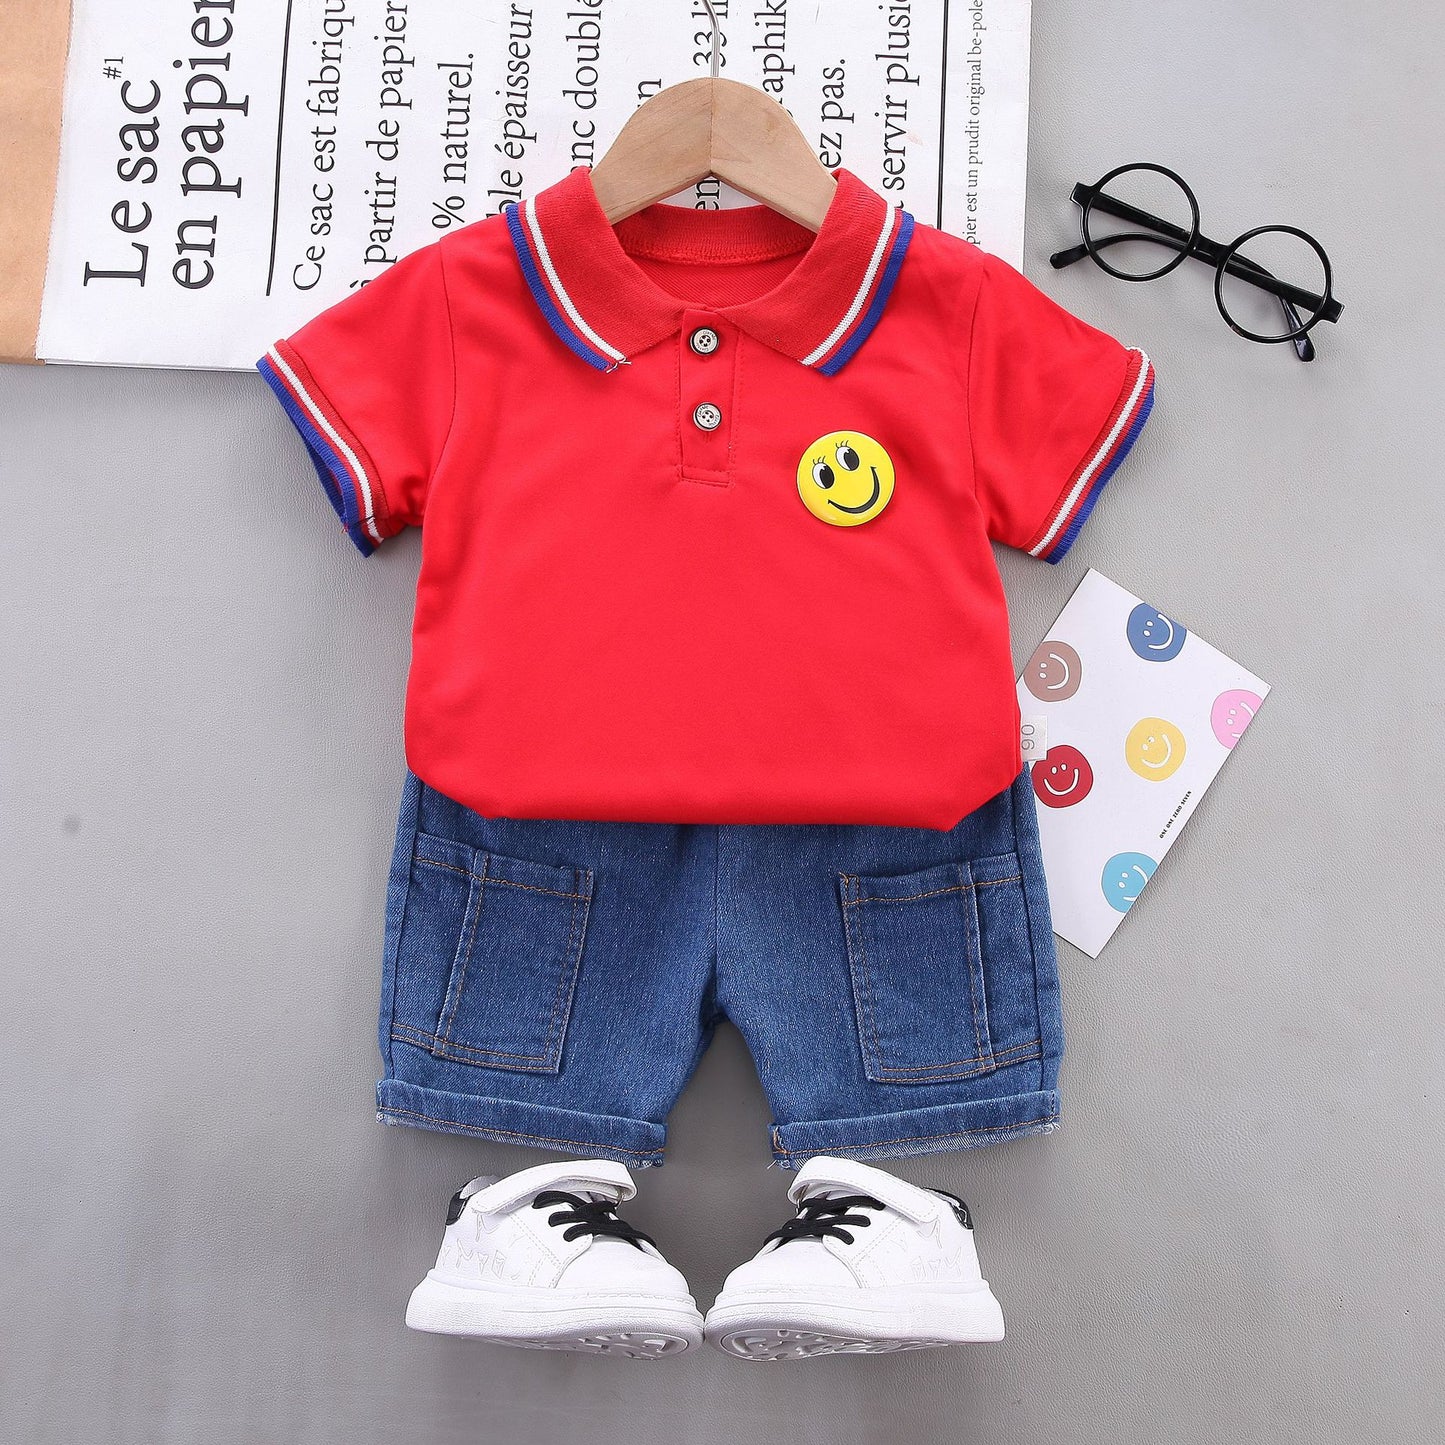 Boy's POLO shirt set